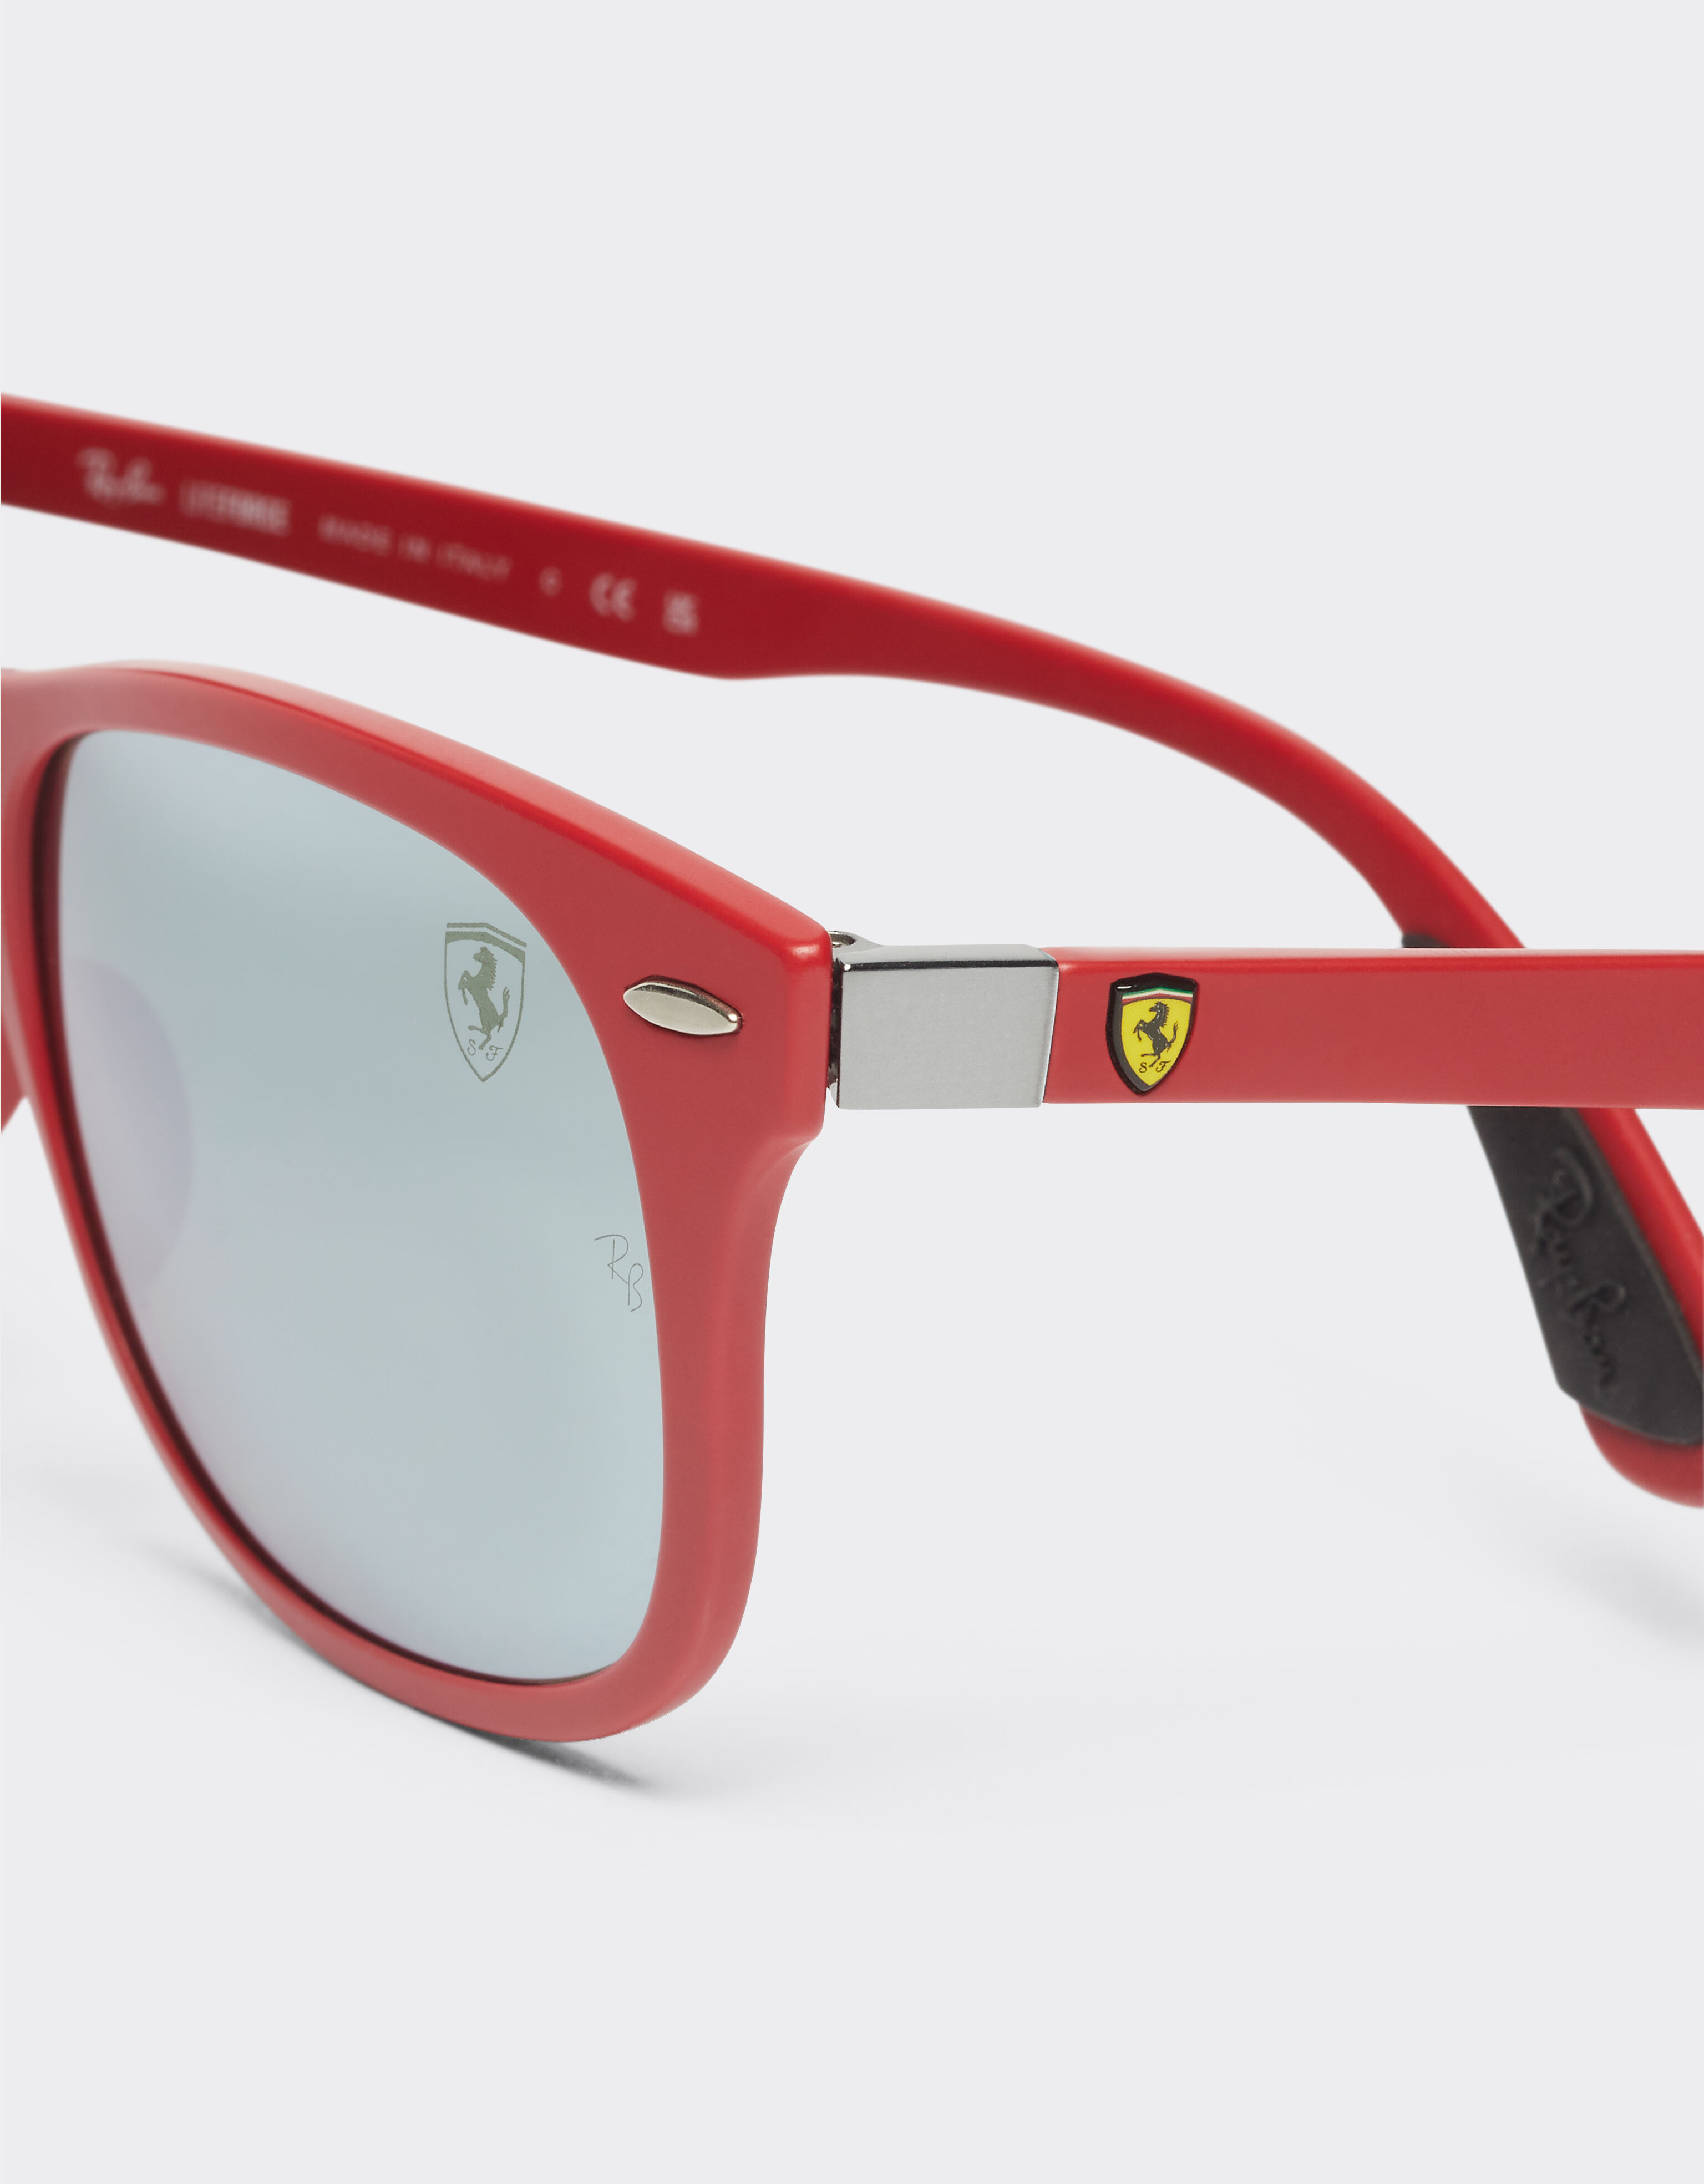 Ferrari Occhiale da sole Ray-Ban for Scuderia Ferrari 0RB4607M rosso opaco con lenti verdi specchiate argento Rosso F1298f